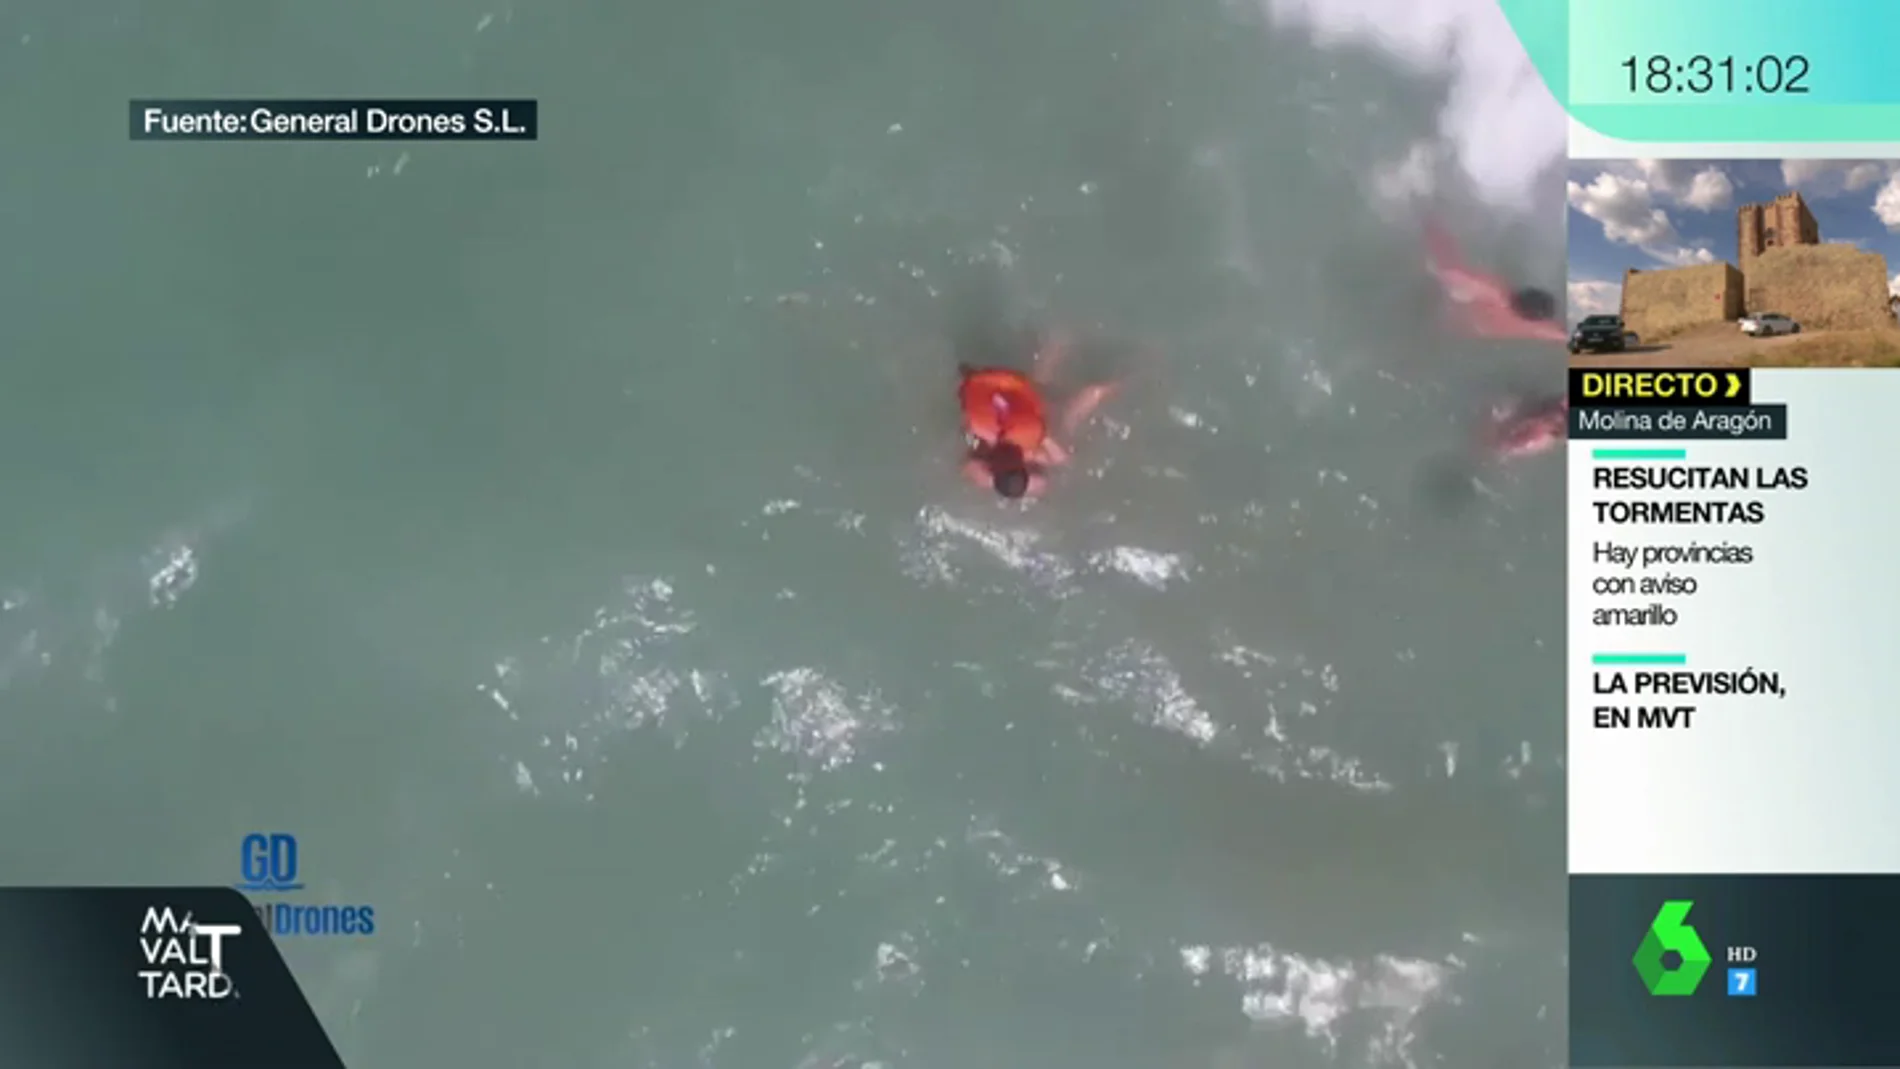 Rescate con el dron a unos bañistas en el Puerto de Sagunto